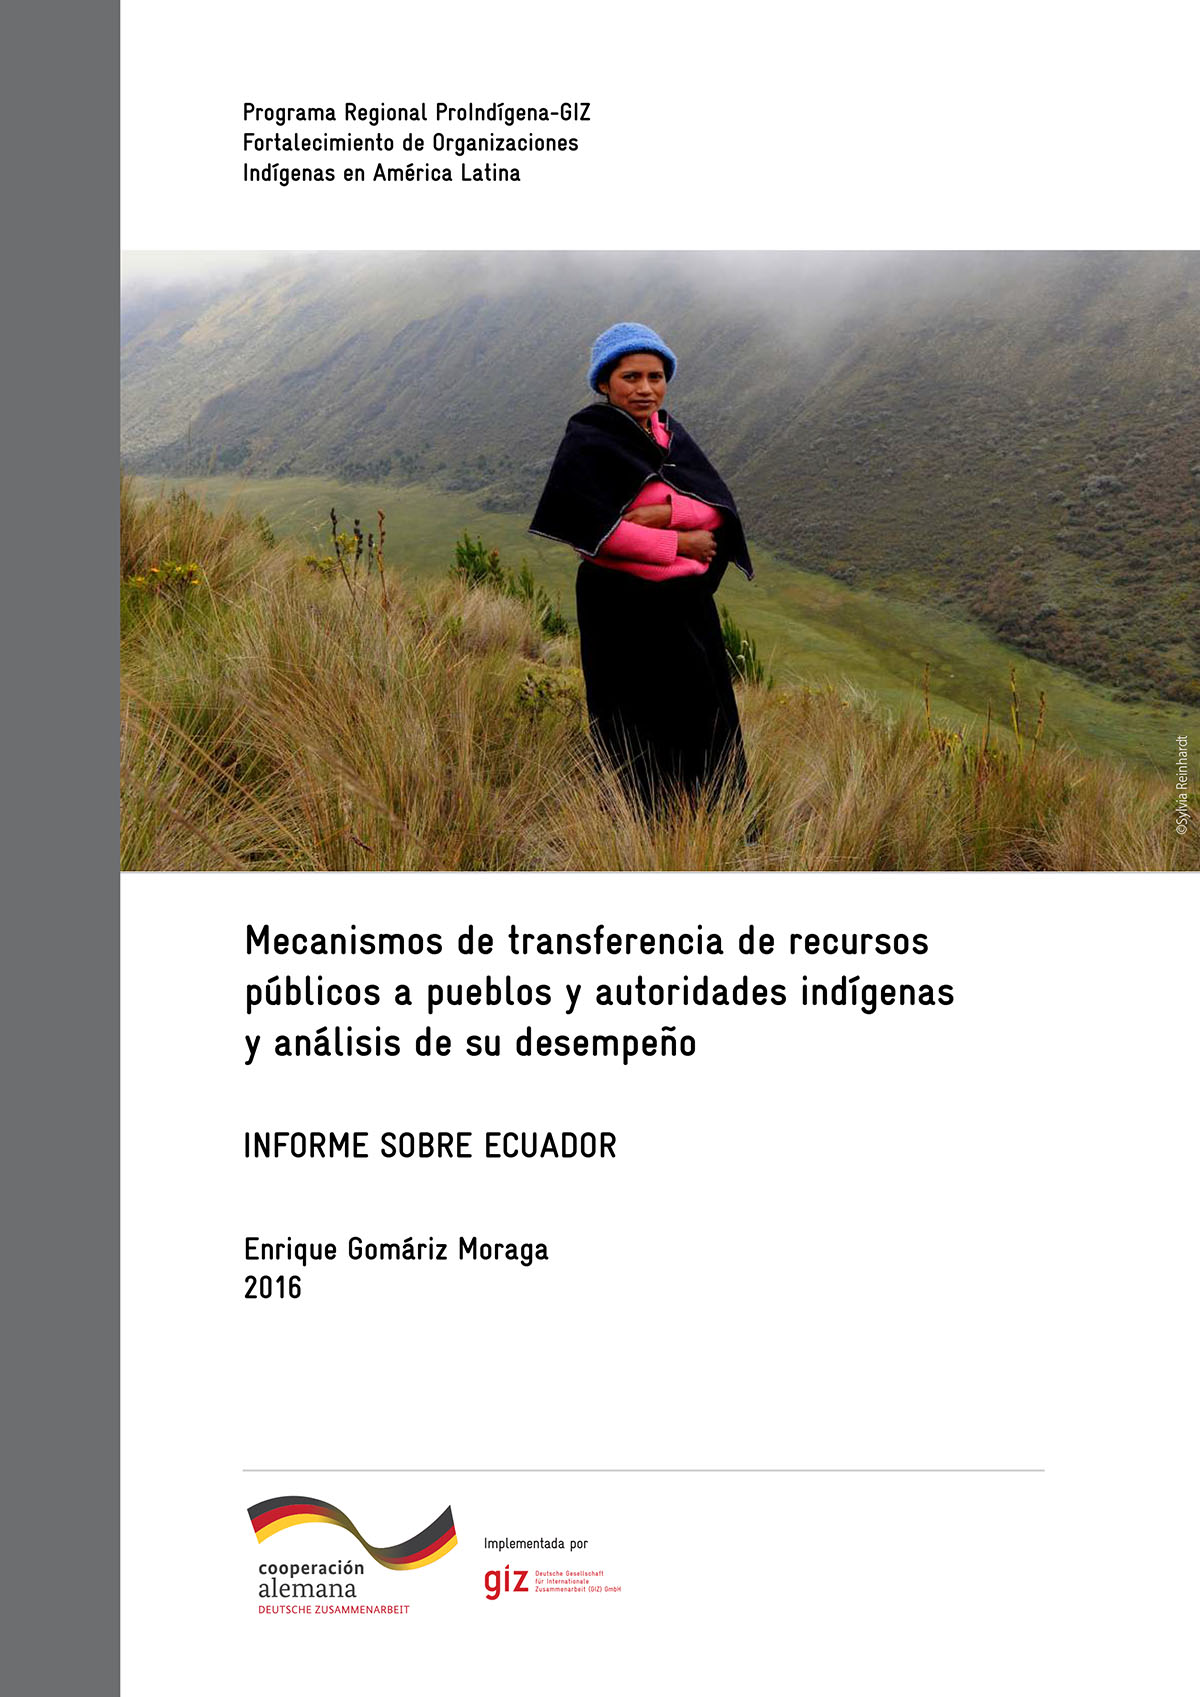 Mecanismos de transferencia de recursos públicos a pueblos y autoridades indígenas y análisis de su desempeño